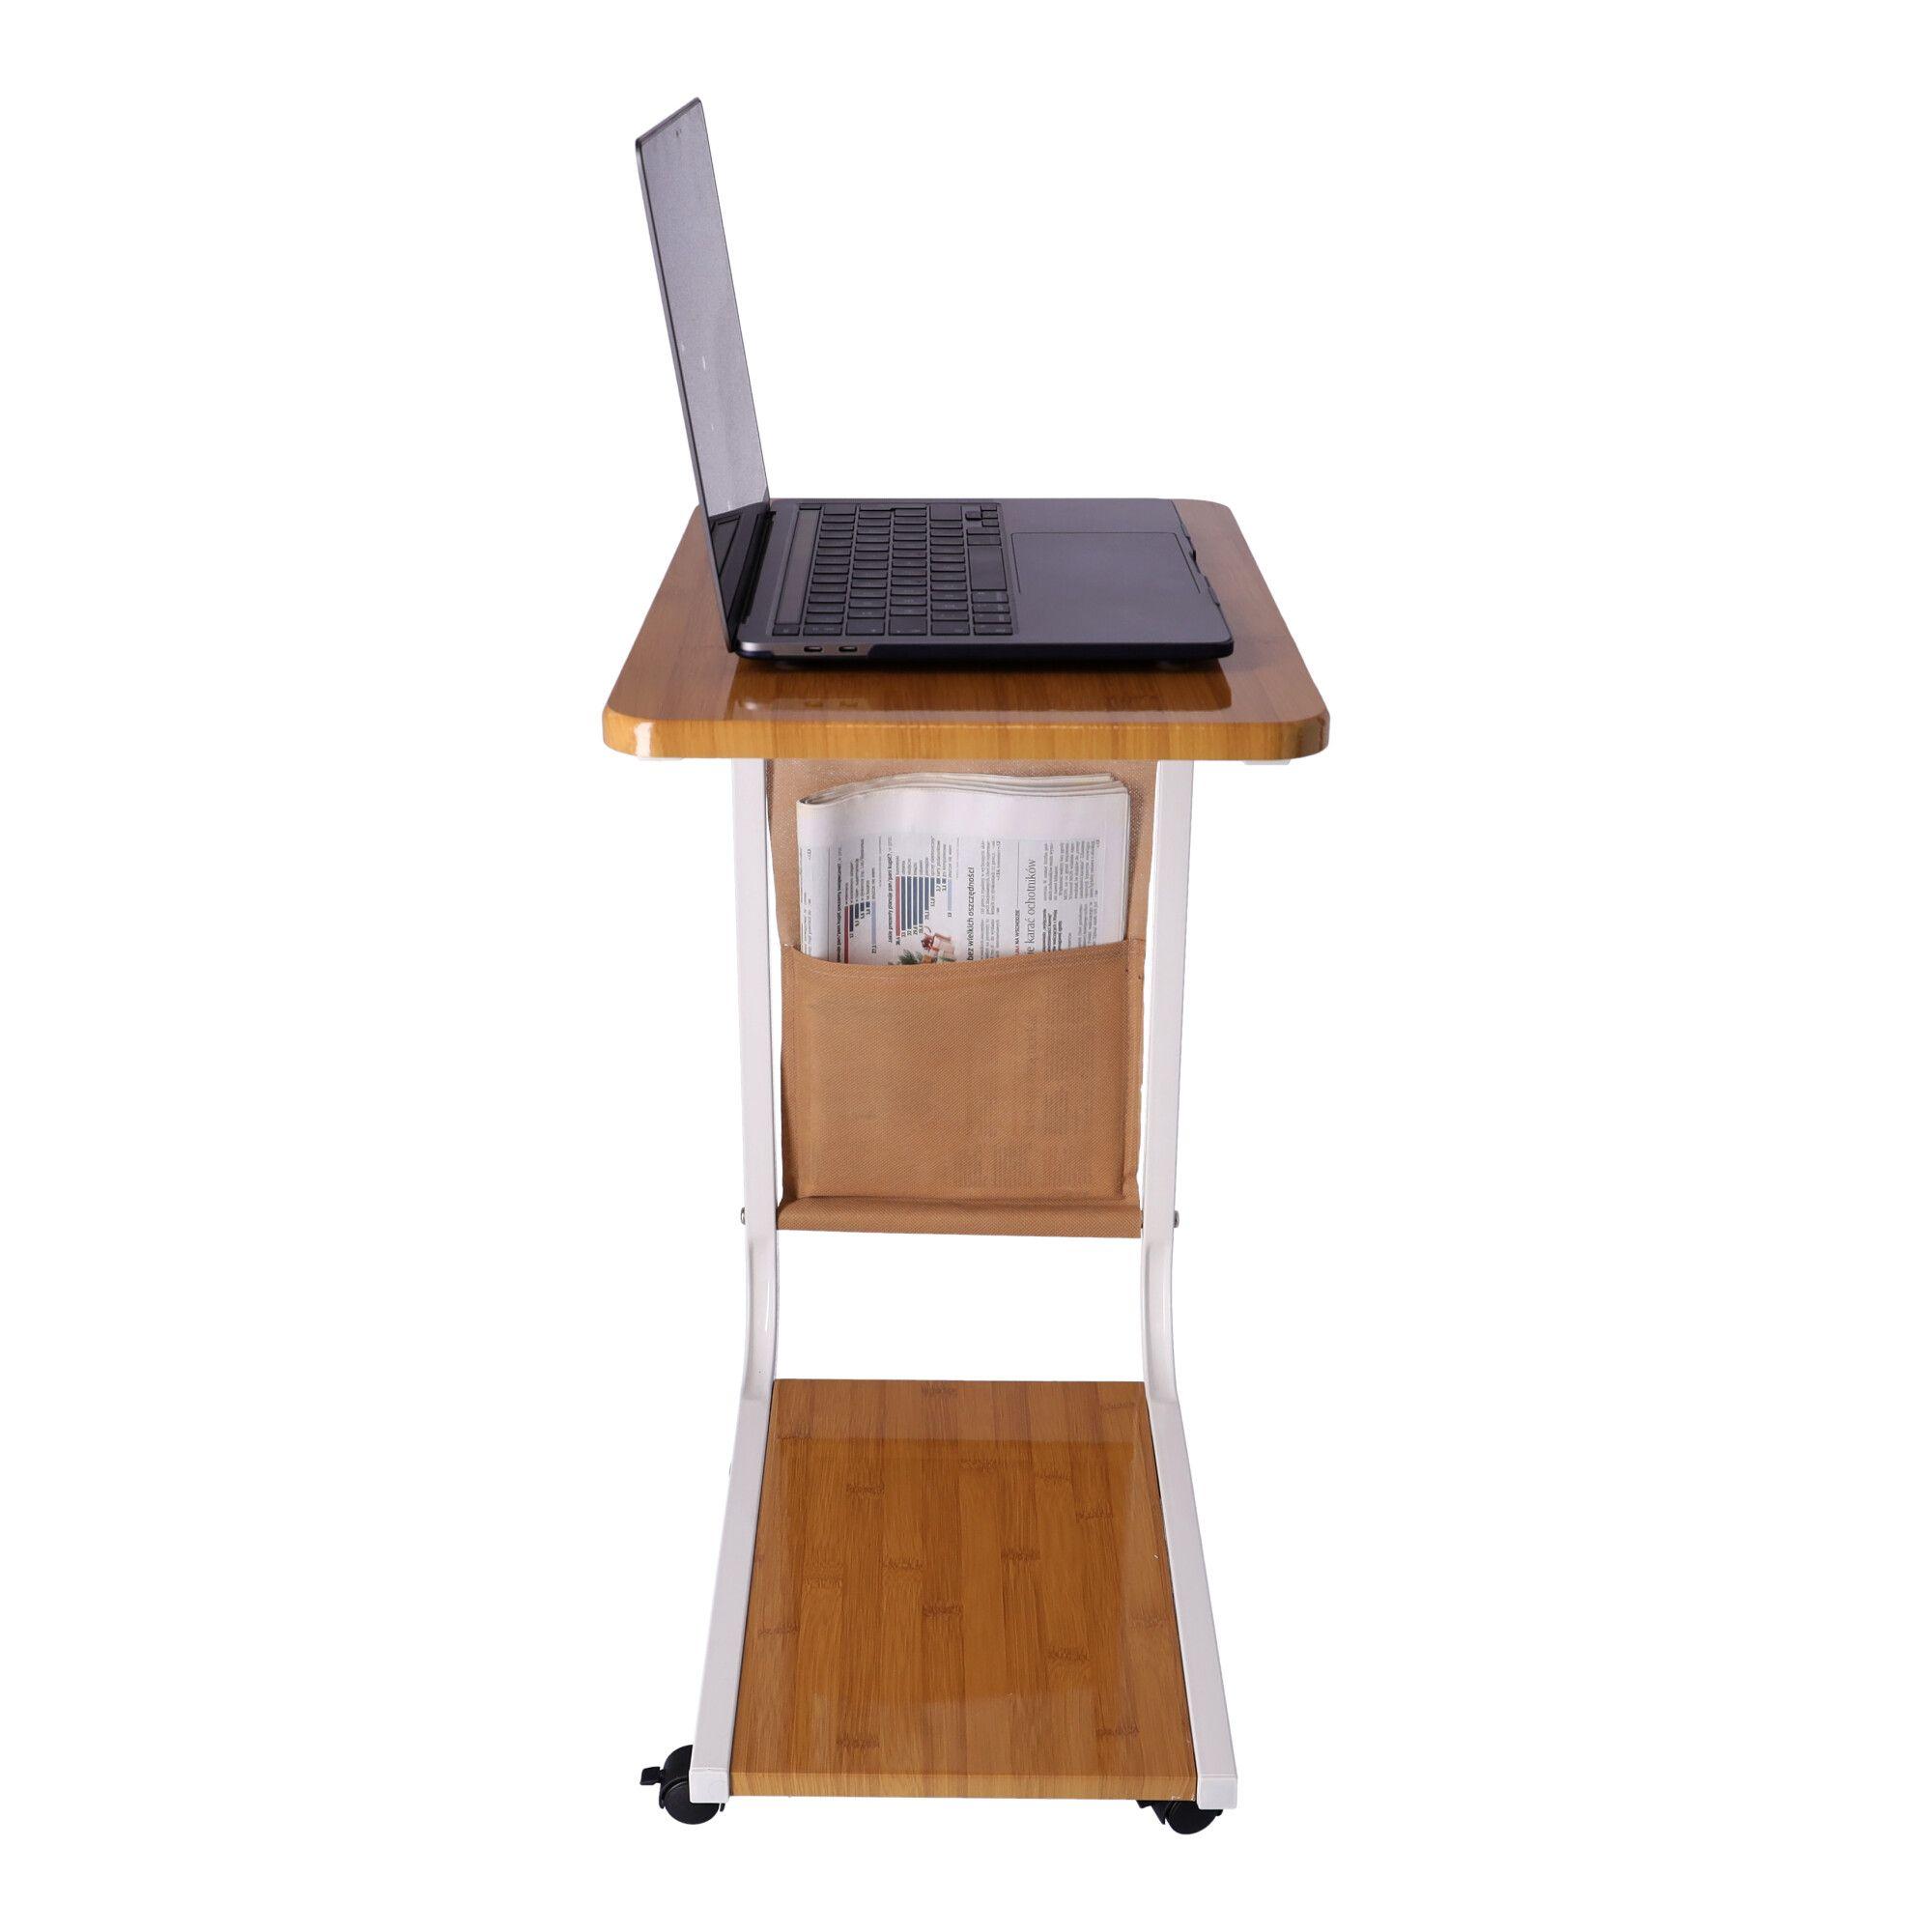 Mobilny stolik kawowy / Stolik kawowy boczny na kółkach - kolor bambusowy